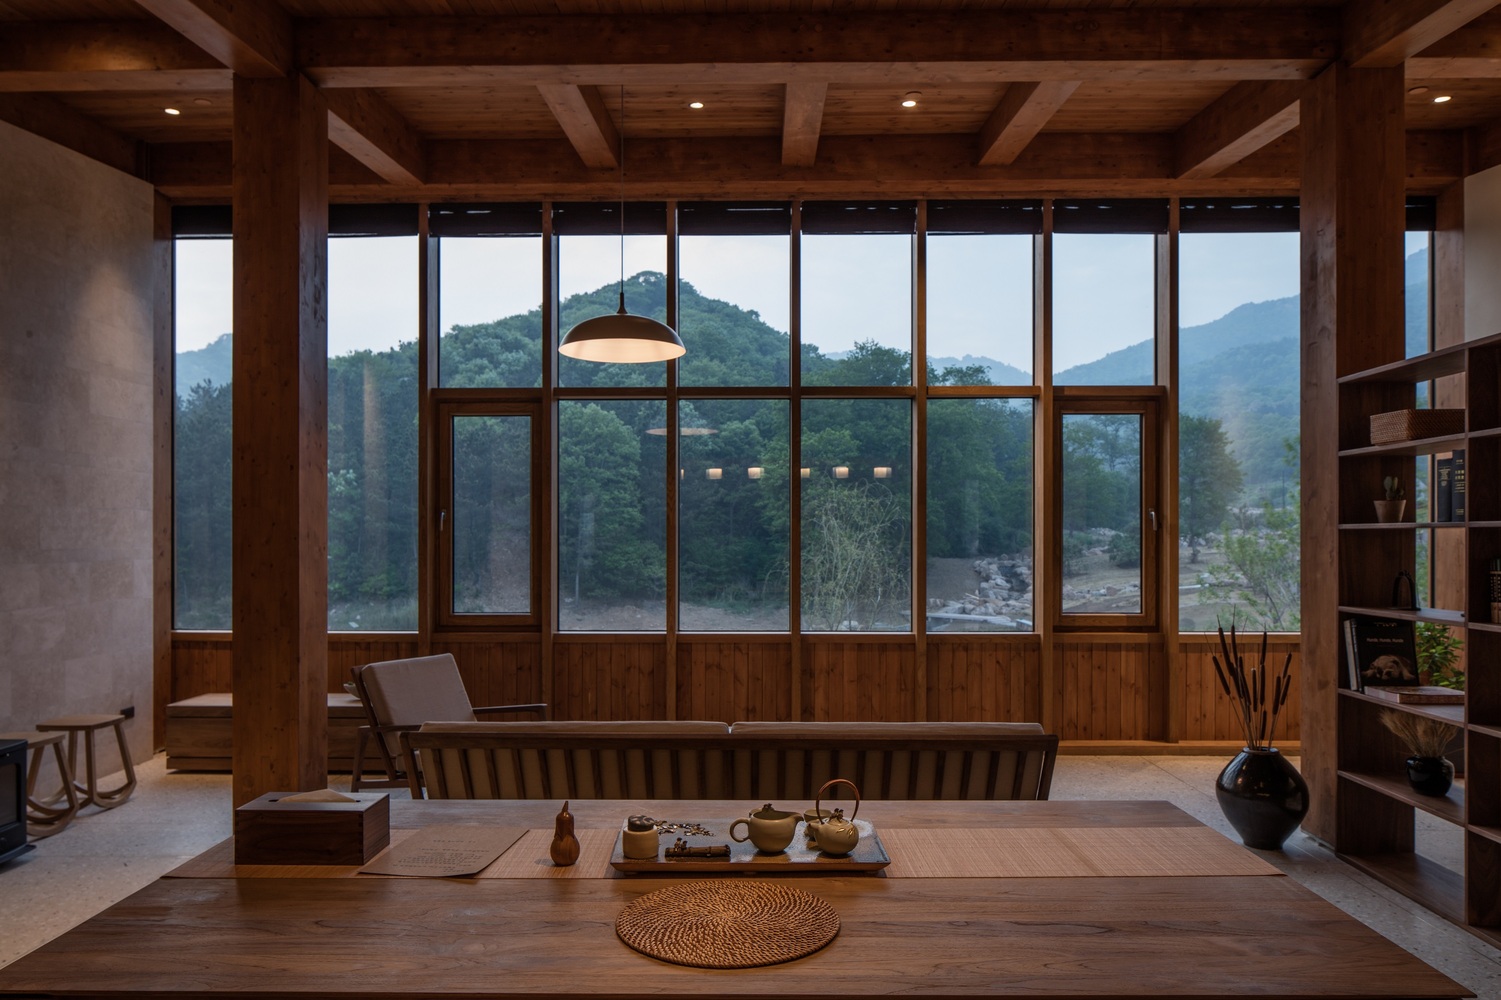 مقاربة "دووشانغ استوديو" في التصميم تحاور باستمرار الشرفة الخارجية، حيث يتغلغل نور الطبيعة وتشق ألوانها طريقها نحو الداخل، لرسم جو مثالي.